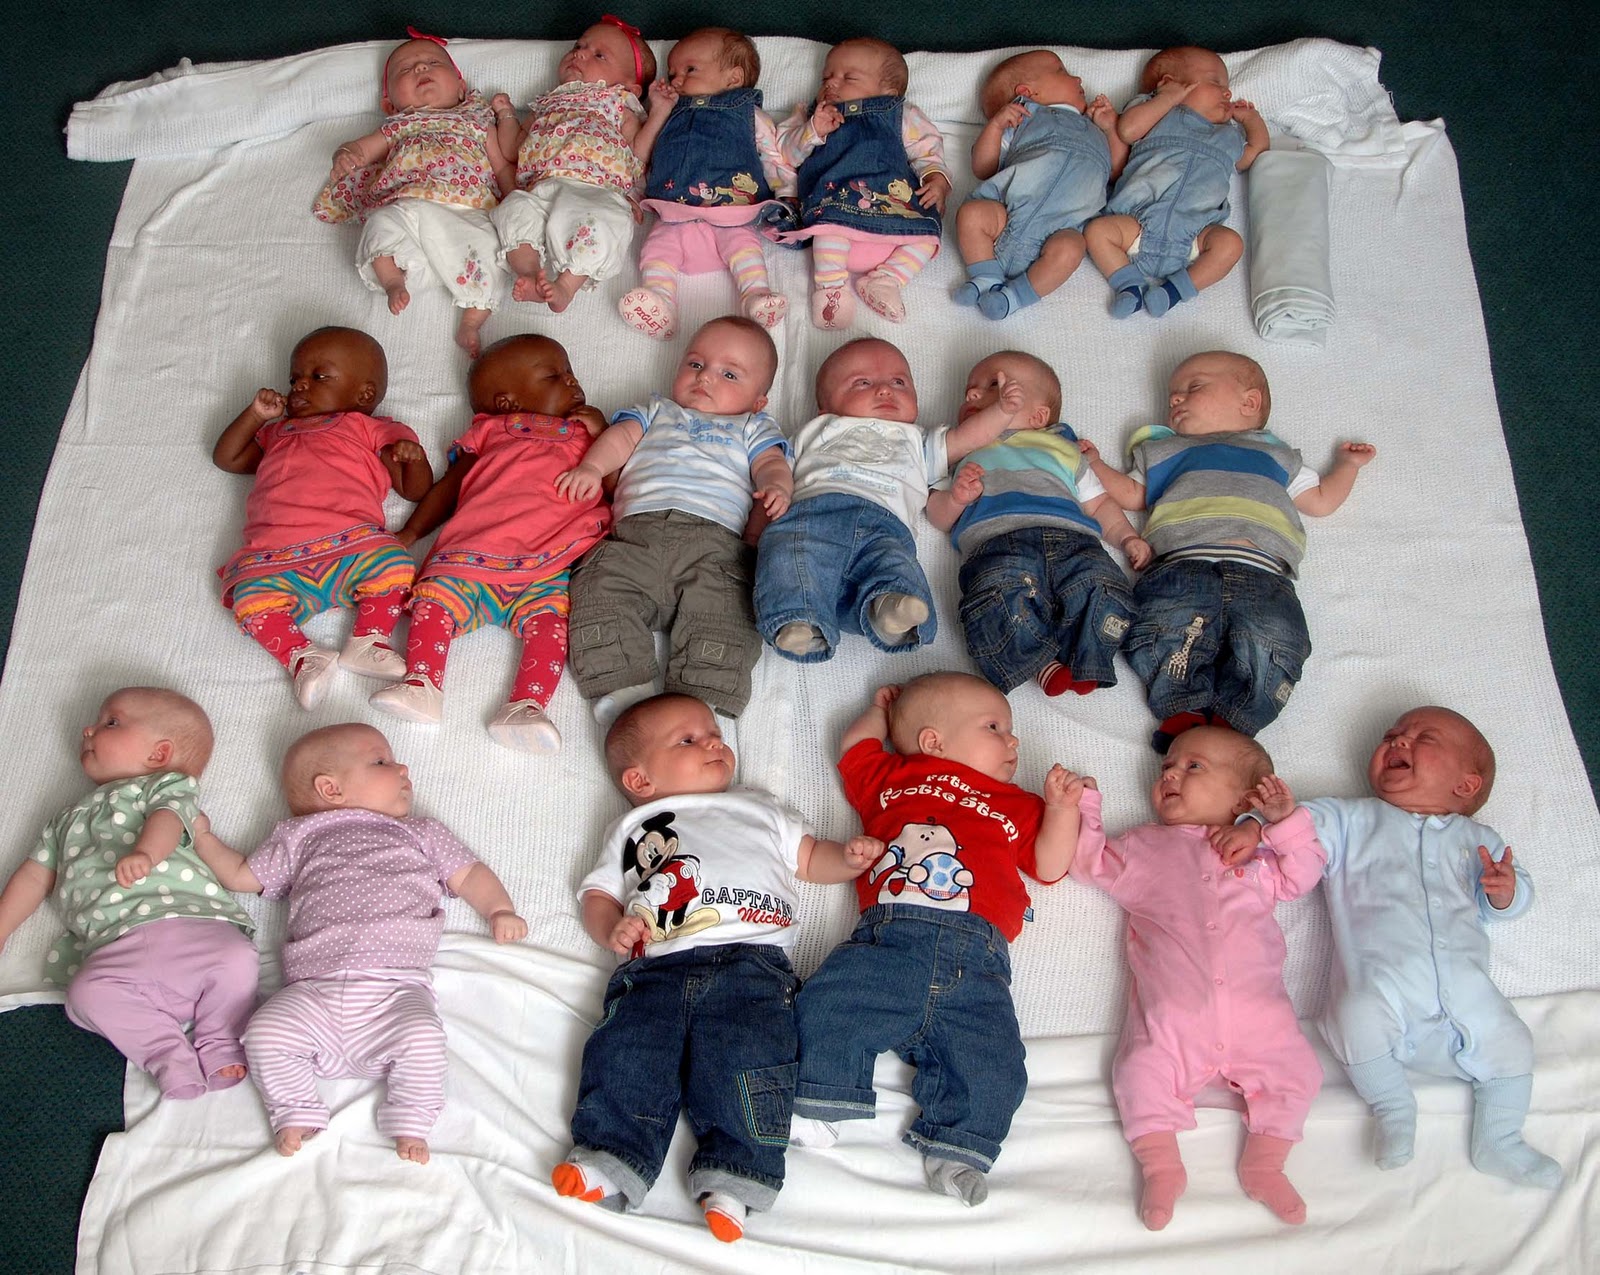 http://4.bp.blogspot.com/_Cgu1cdJD5ng/TMDzuqy5niI/AAAAAAAAAbY/Al--Wd5aXWI/s1600/Twin-Babies_on_mat.jpg